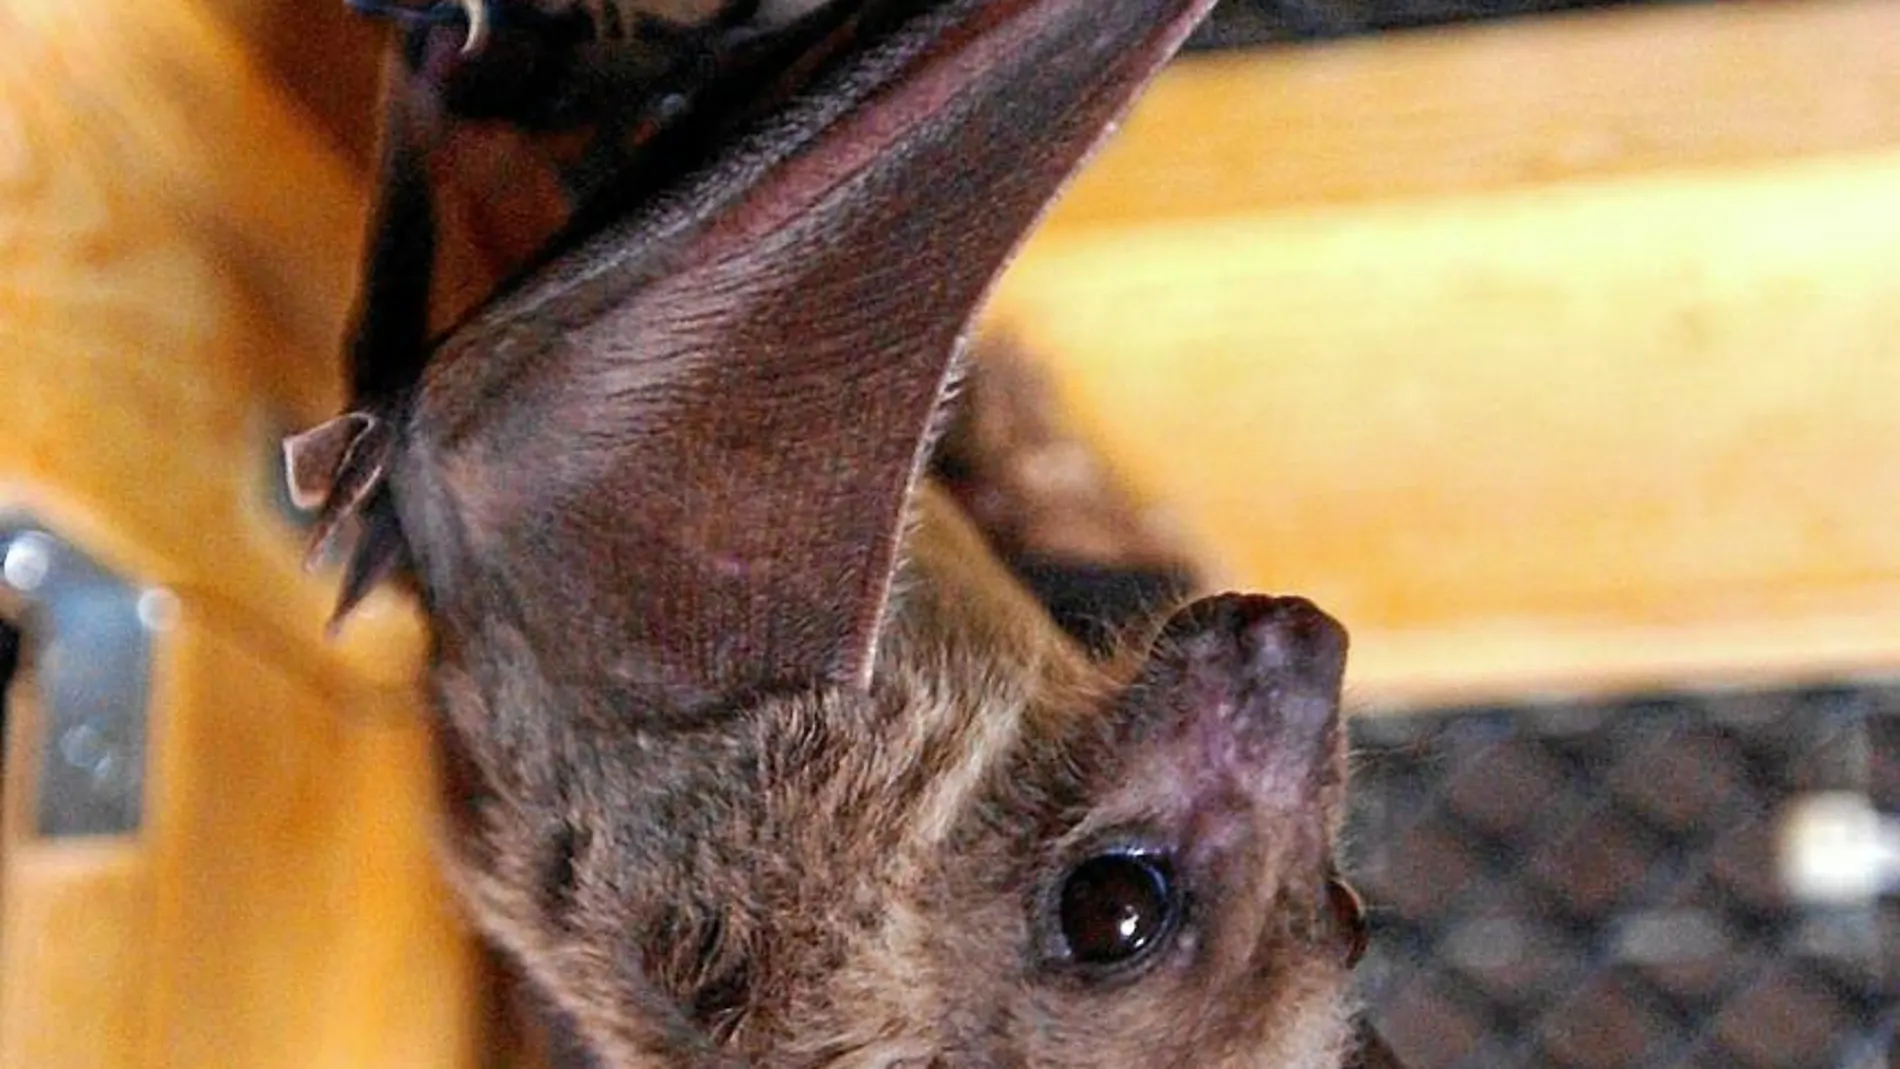 La población de murciélagos en Barcelona se ha visto reducida en los últimos años a causa del cambio climático